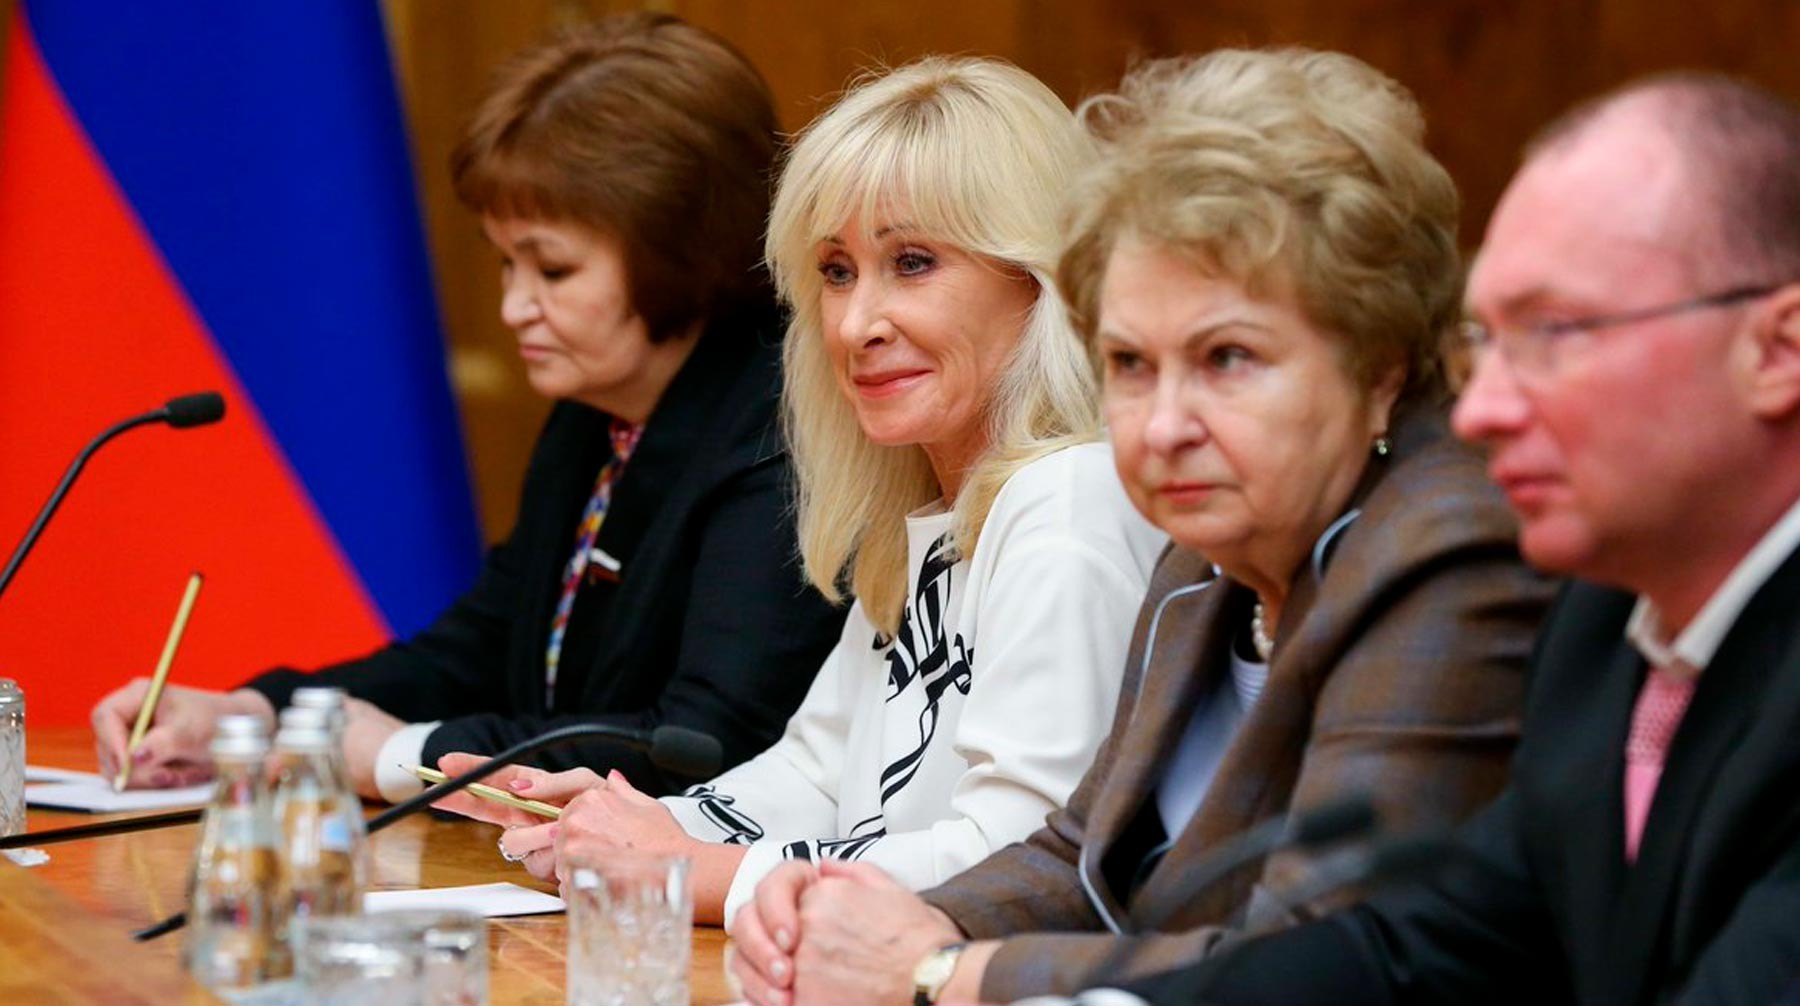 «Сверхцинично и абсурдно»: защитницы прав женщин раскритиковали предложение Кузнецовой об абортах